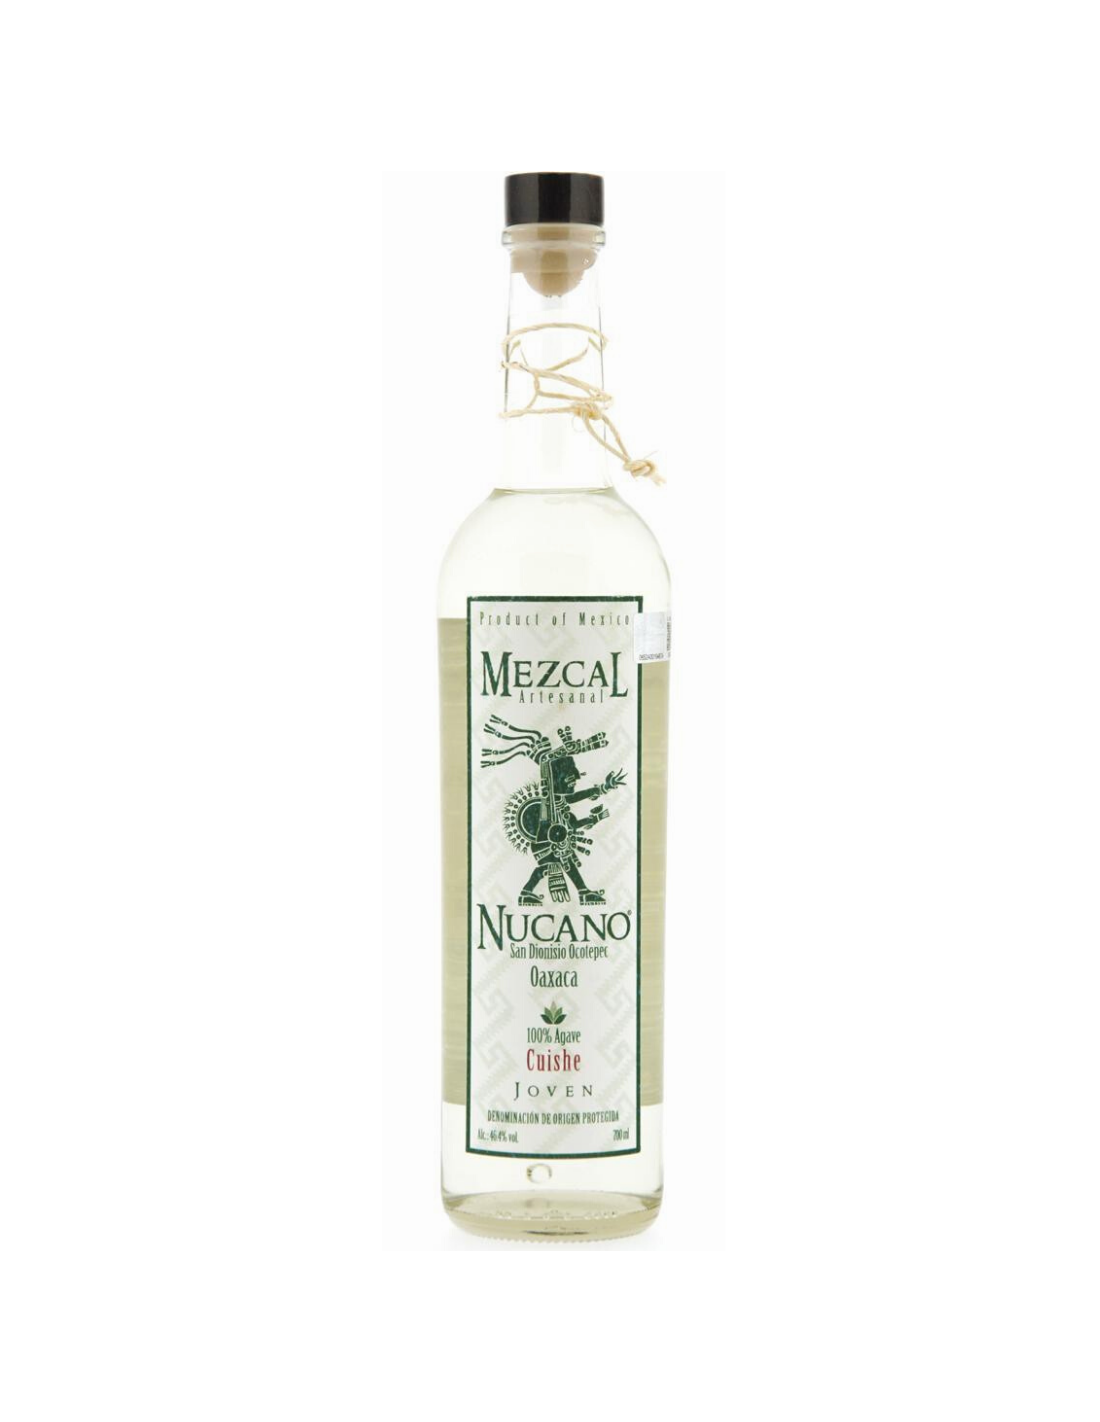 Tequila Mezcal Nucano Cuishe Joven, 0.7L, 46.4% alc., Mexic alcooldiscount.ro